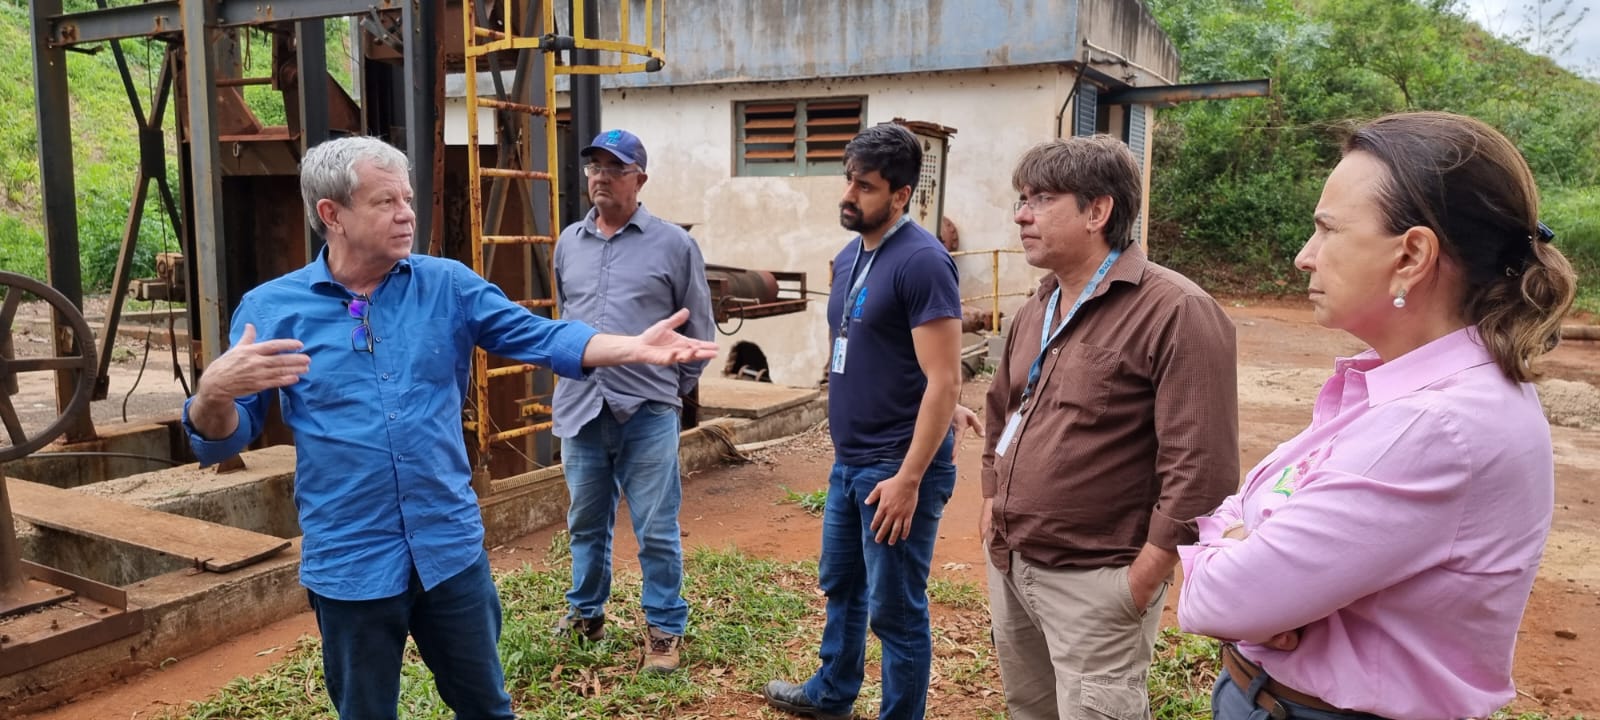 Engenheiro civil de Ribeirão preto visita estações de tratamento de esgoto do SAAE Barretos para propor melhorias